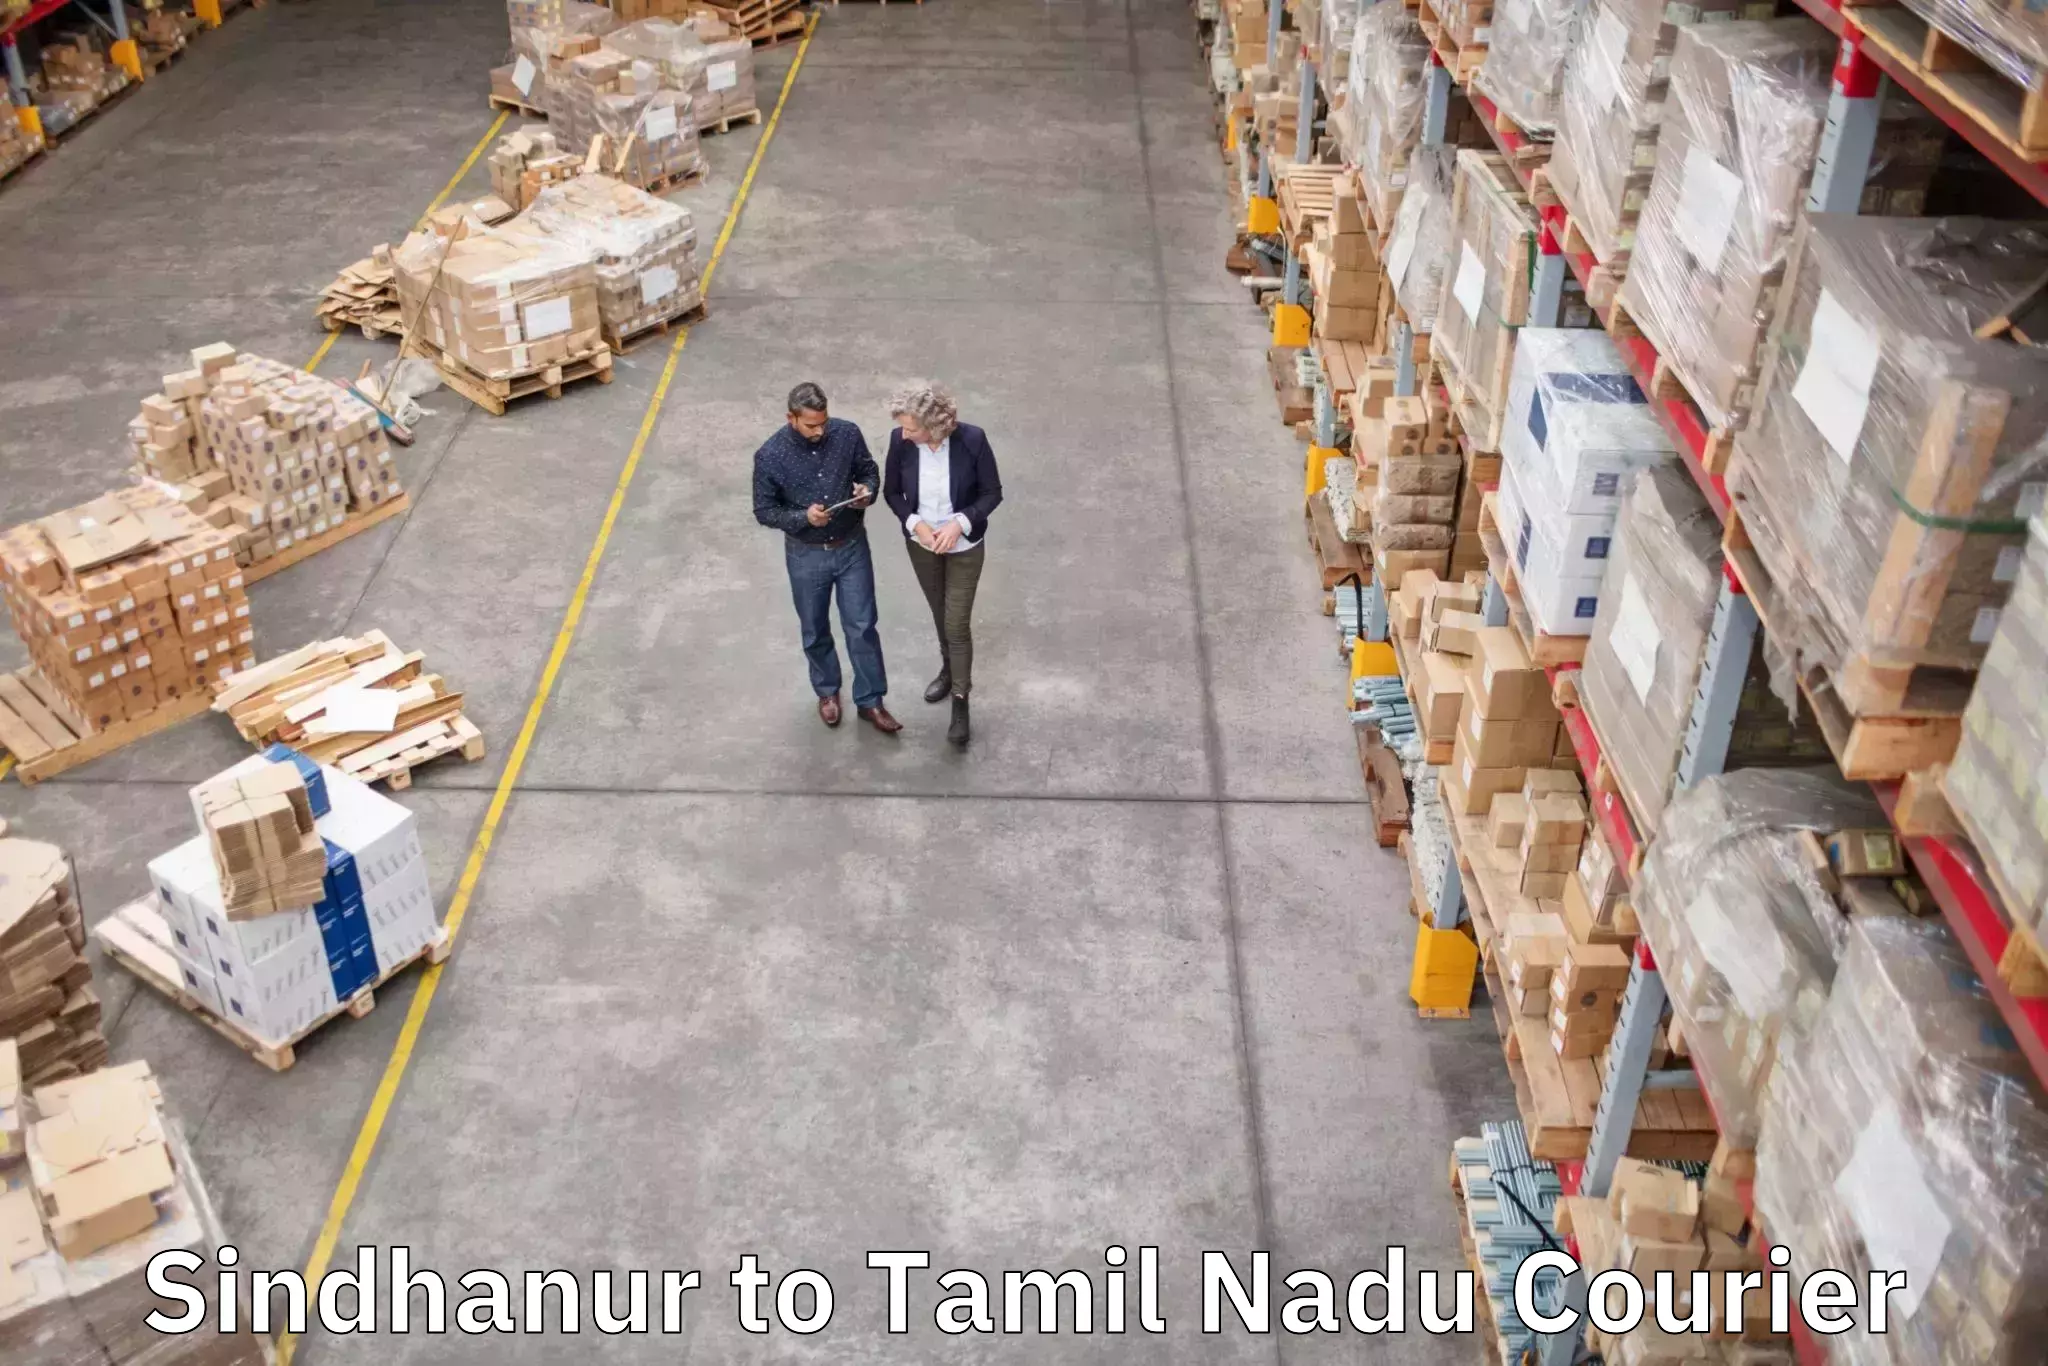 Doorstep luggage pickup Sindhanur to Tamil Nadu